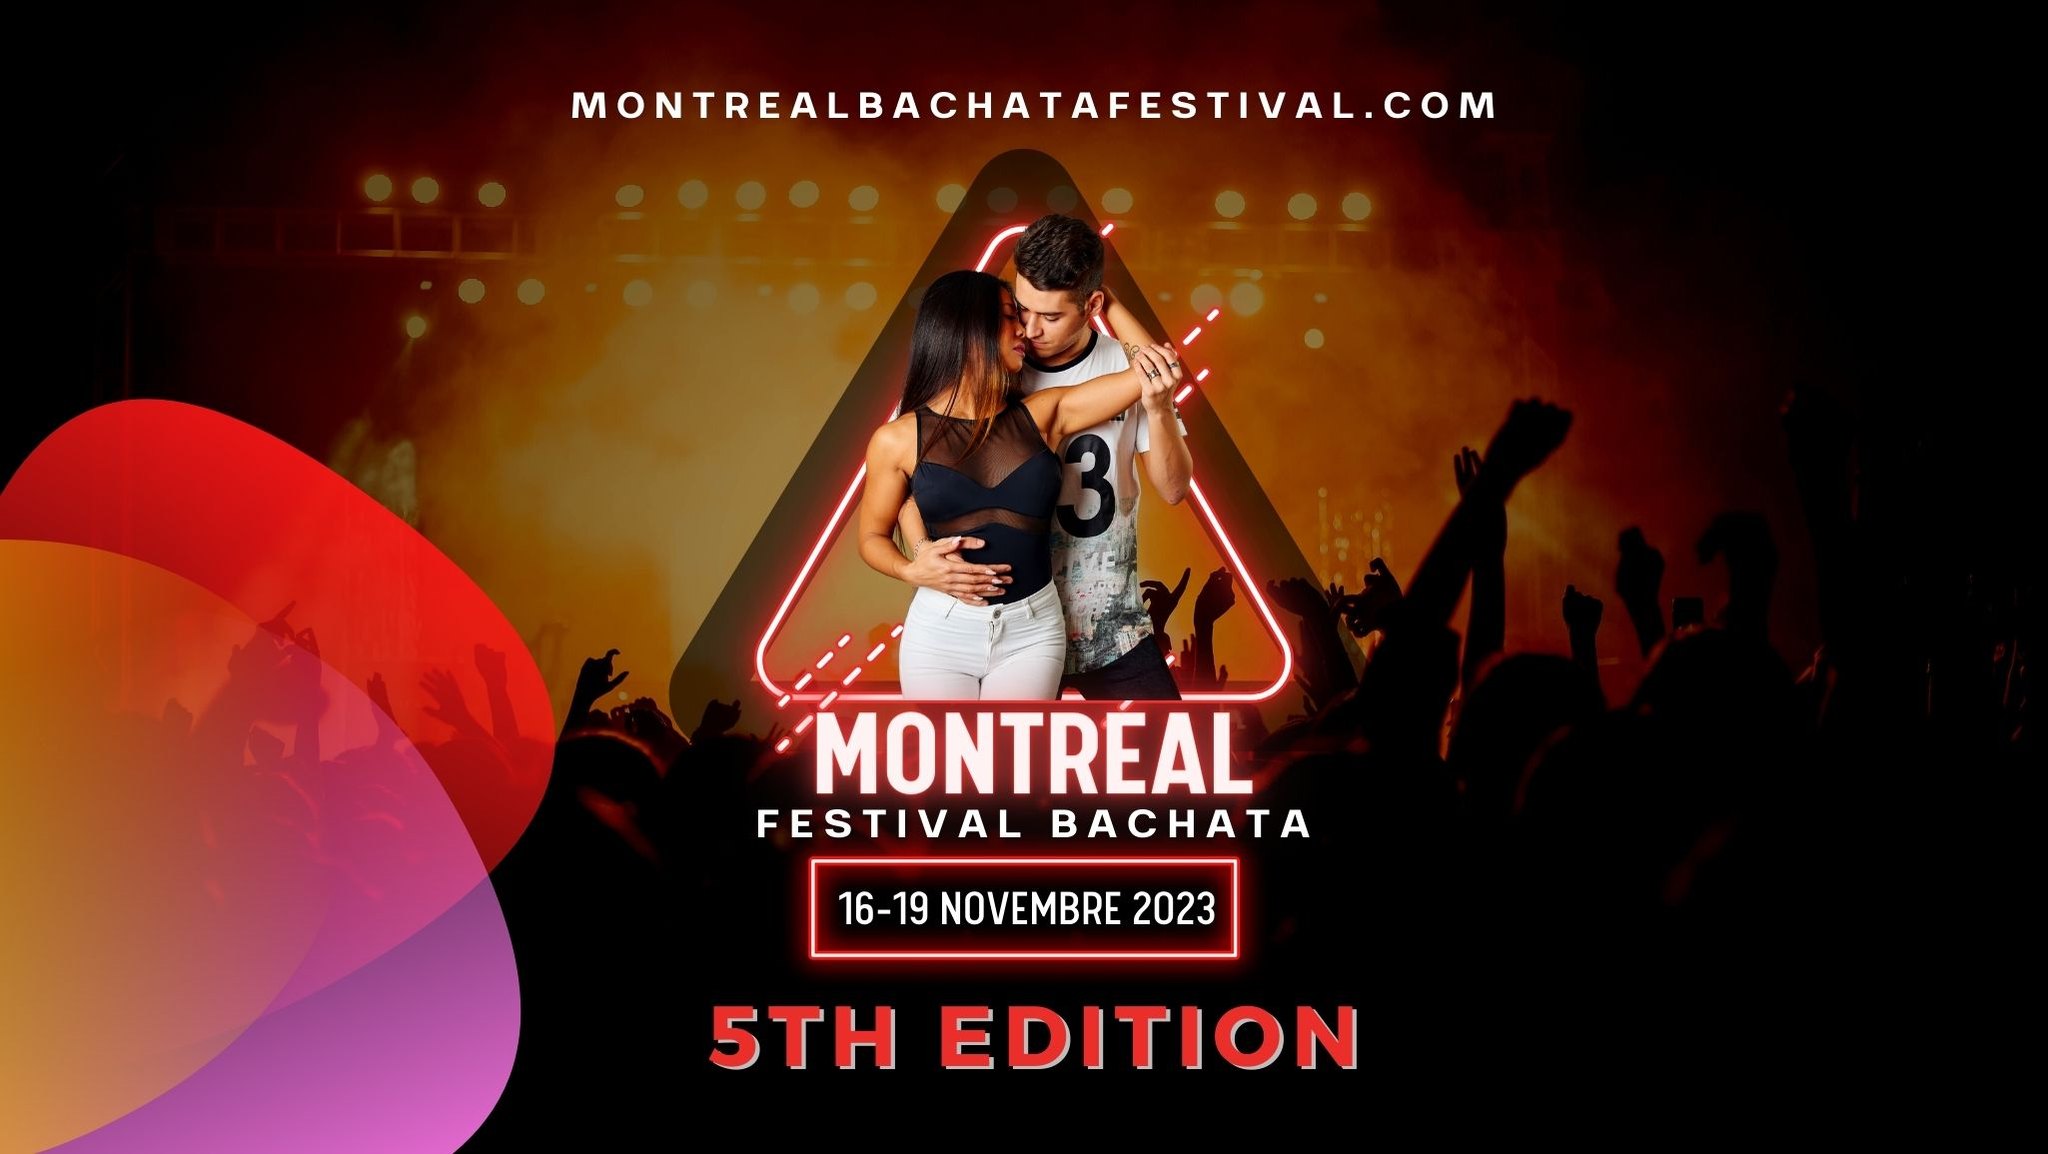 Montreal Bachata Festival